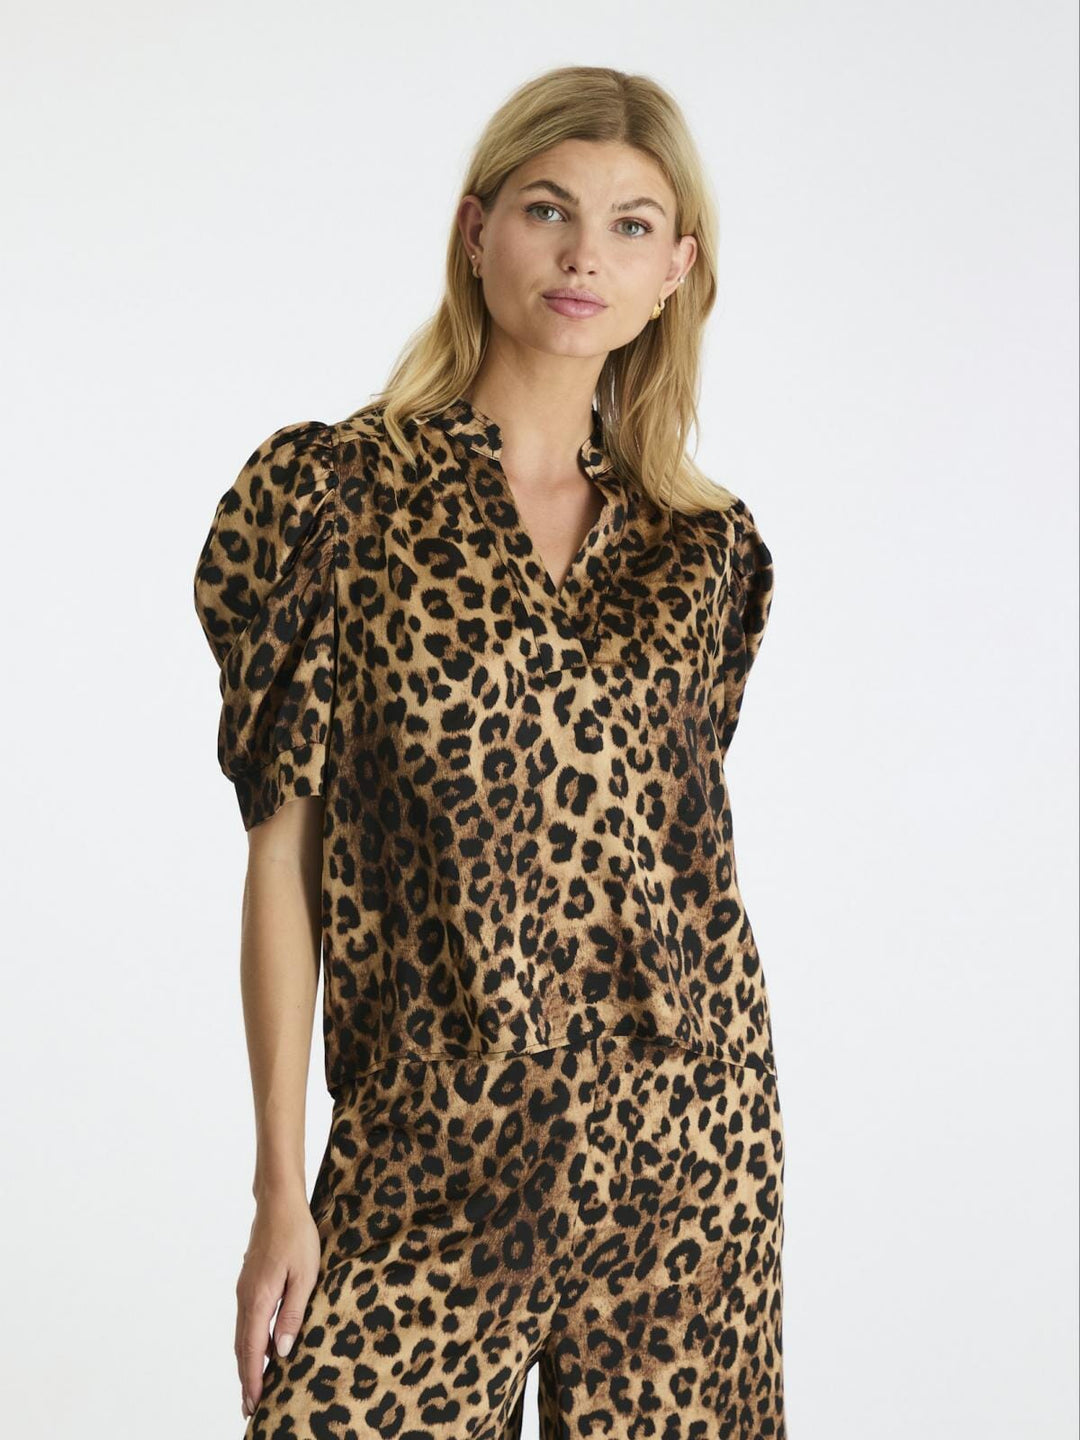 Neo Noir - Roella Leo Blouse - Leopard T-shirts 